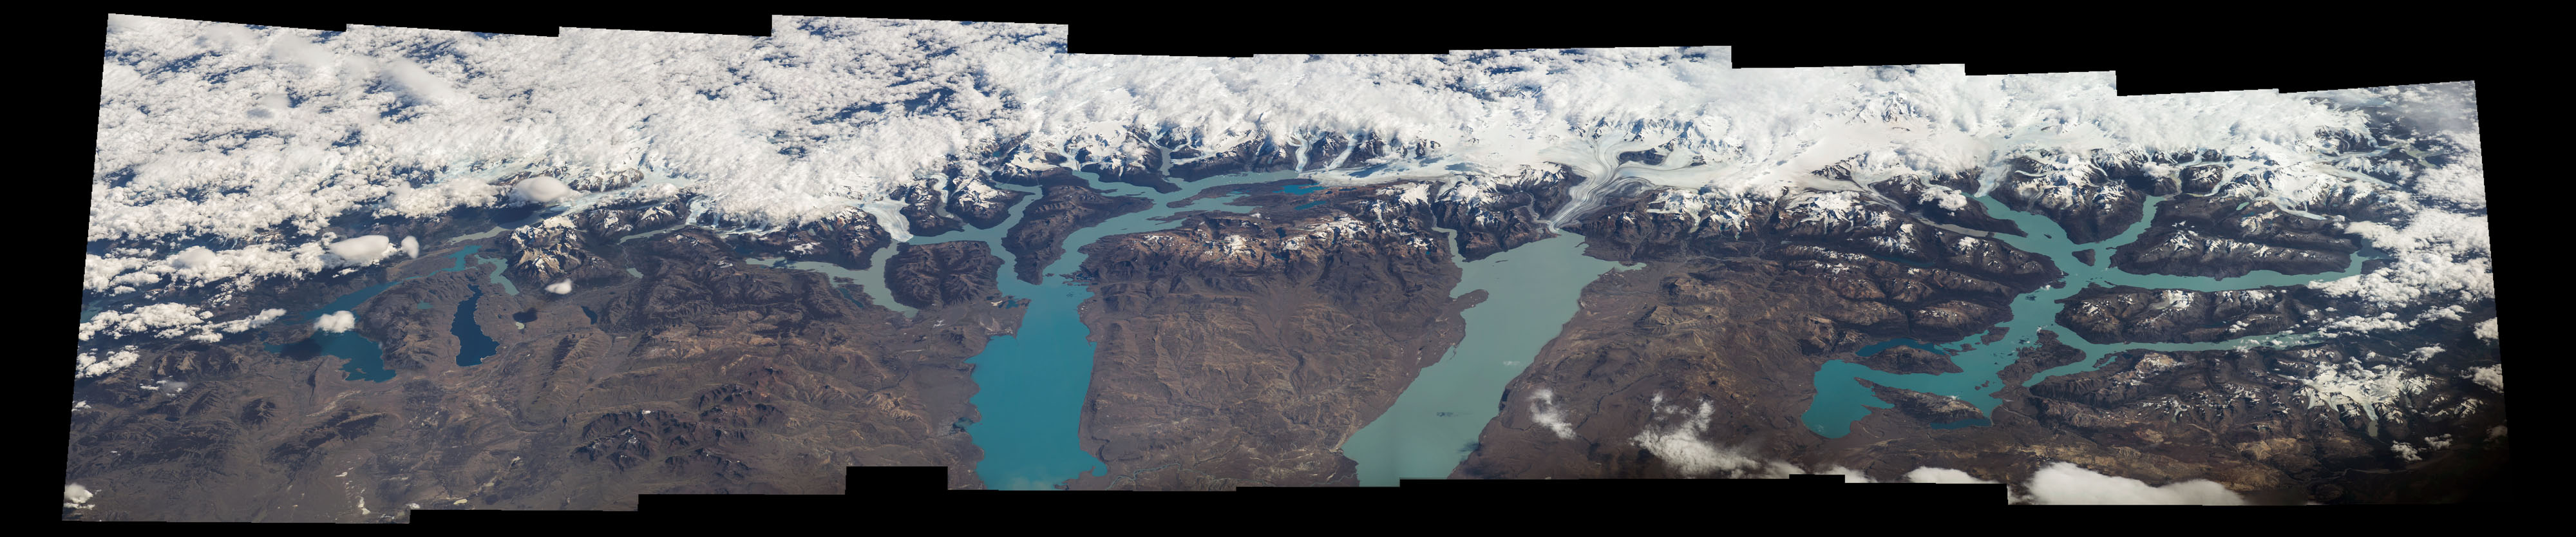 Lakes along Patagonia